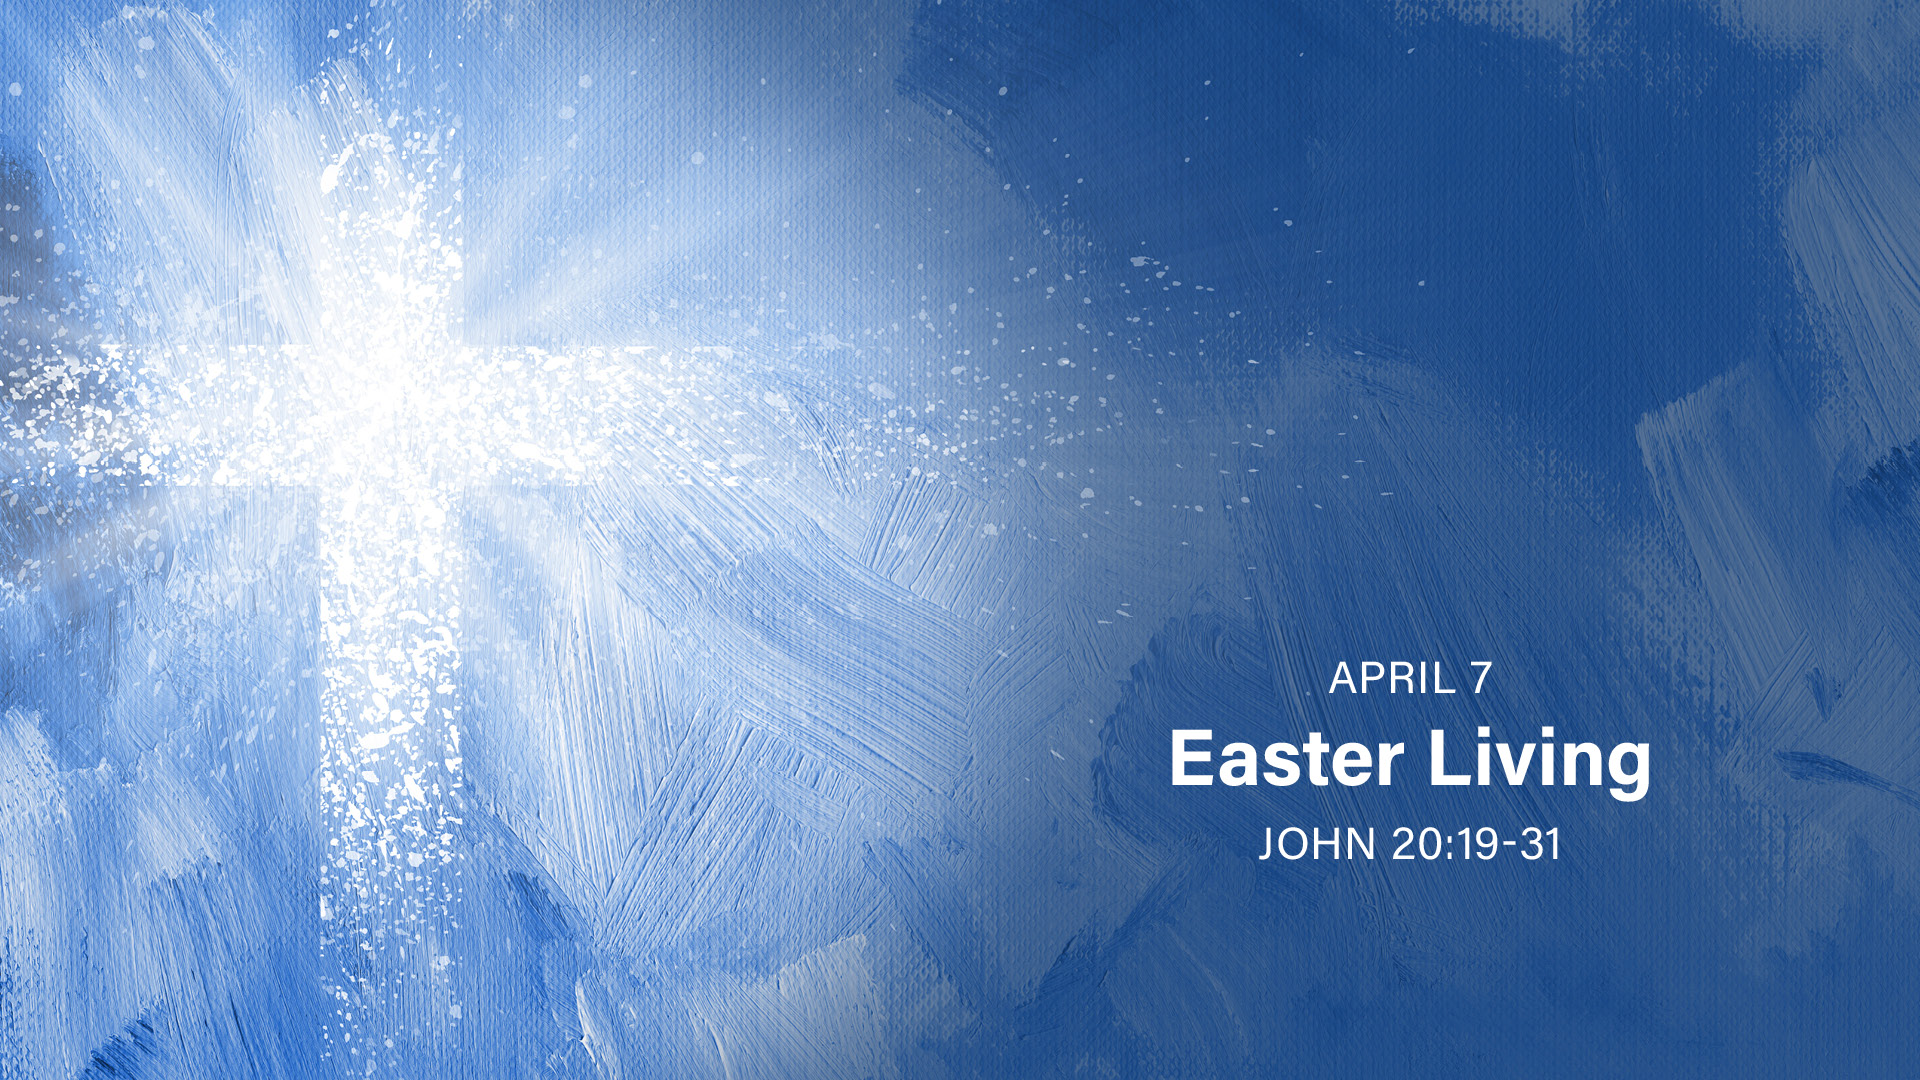 April 7 - Easter Living